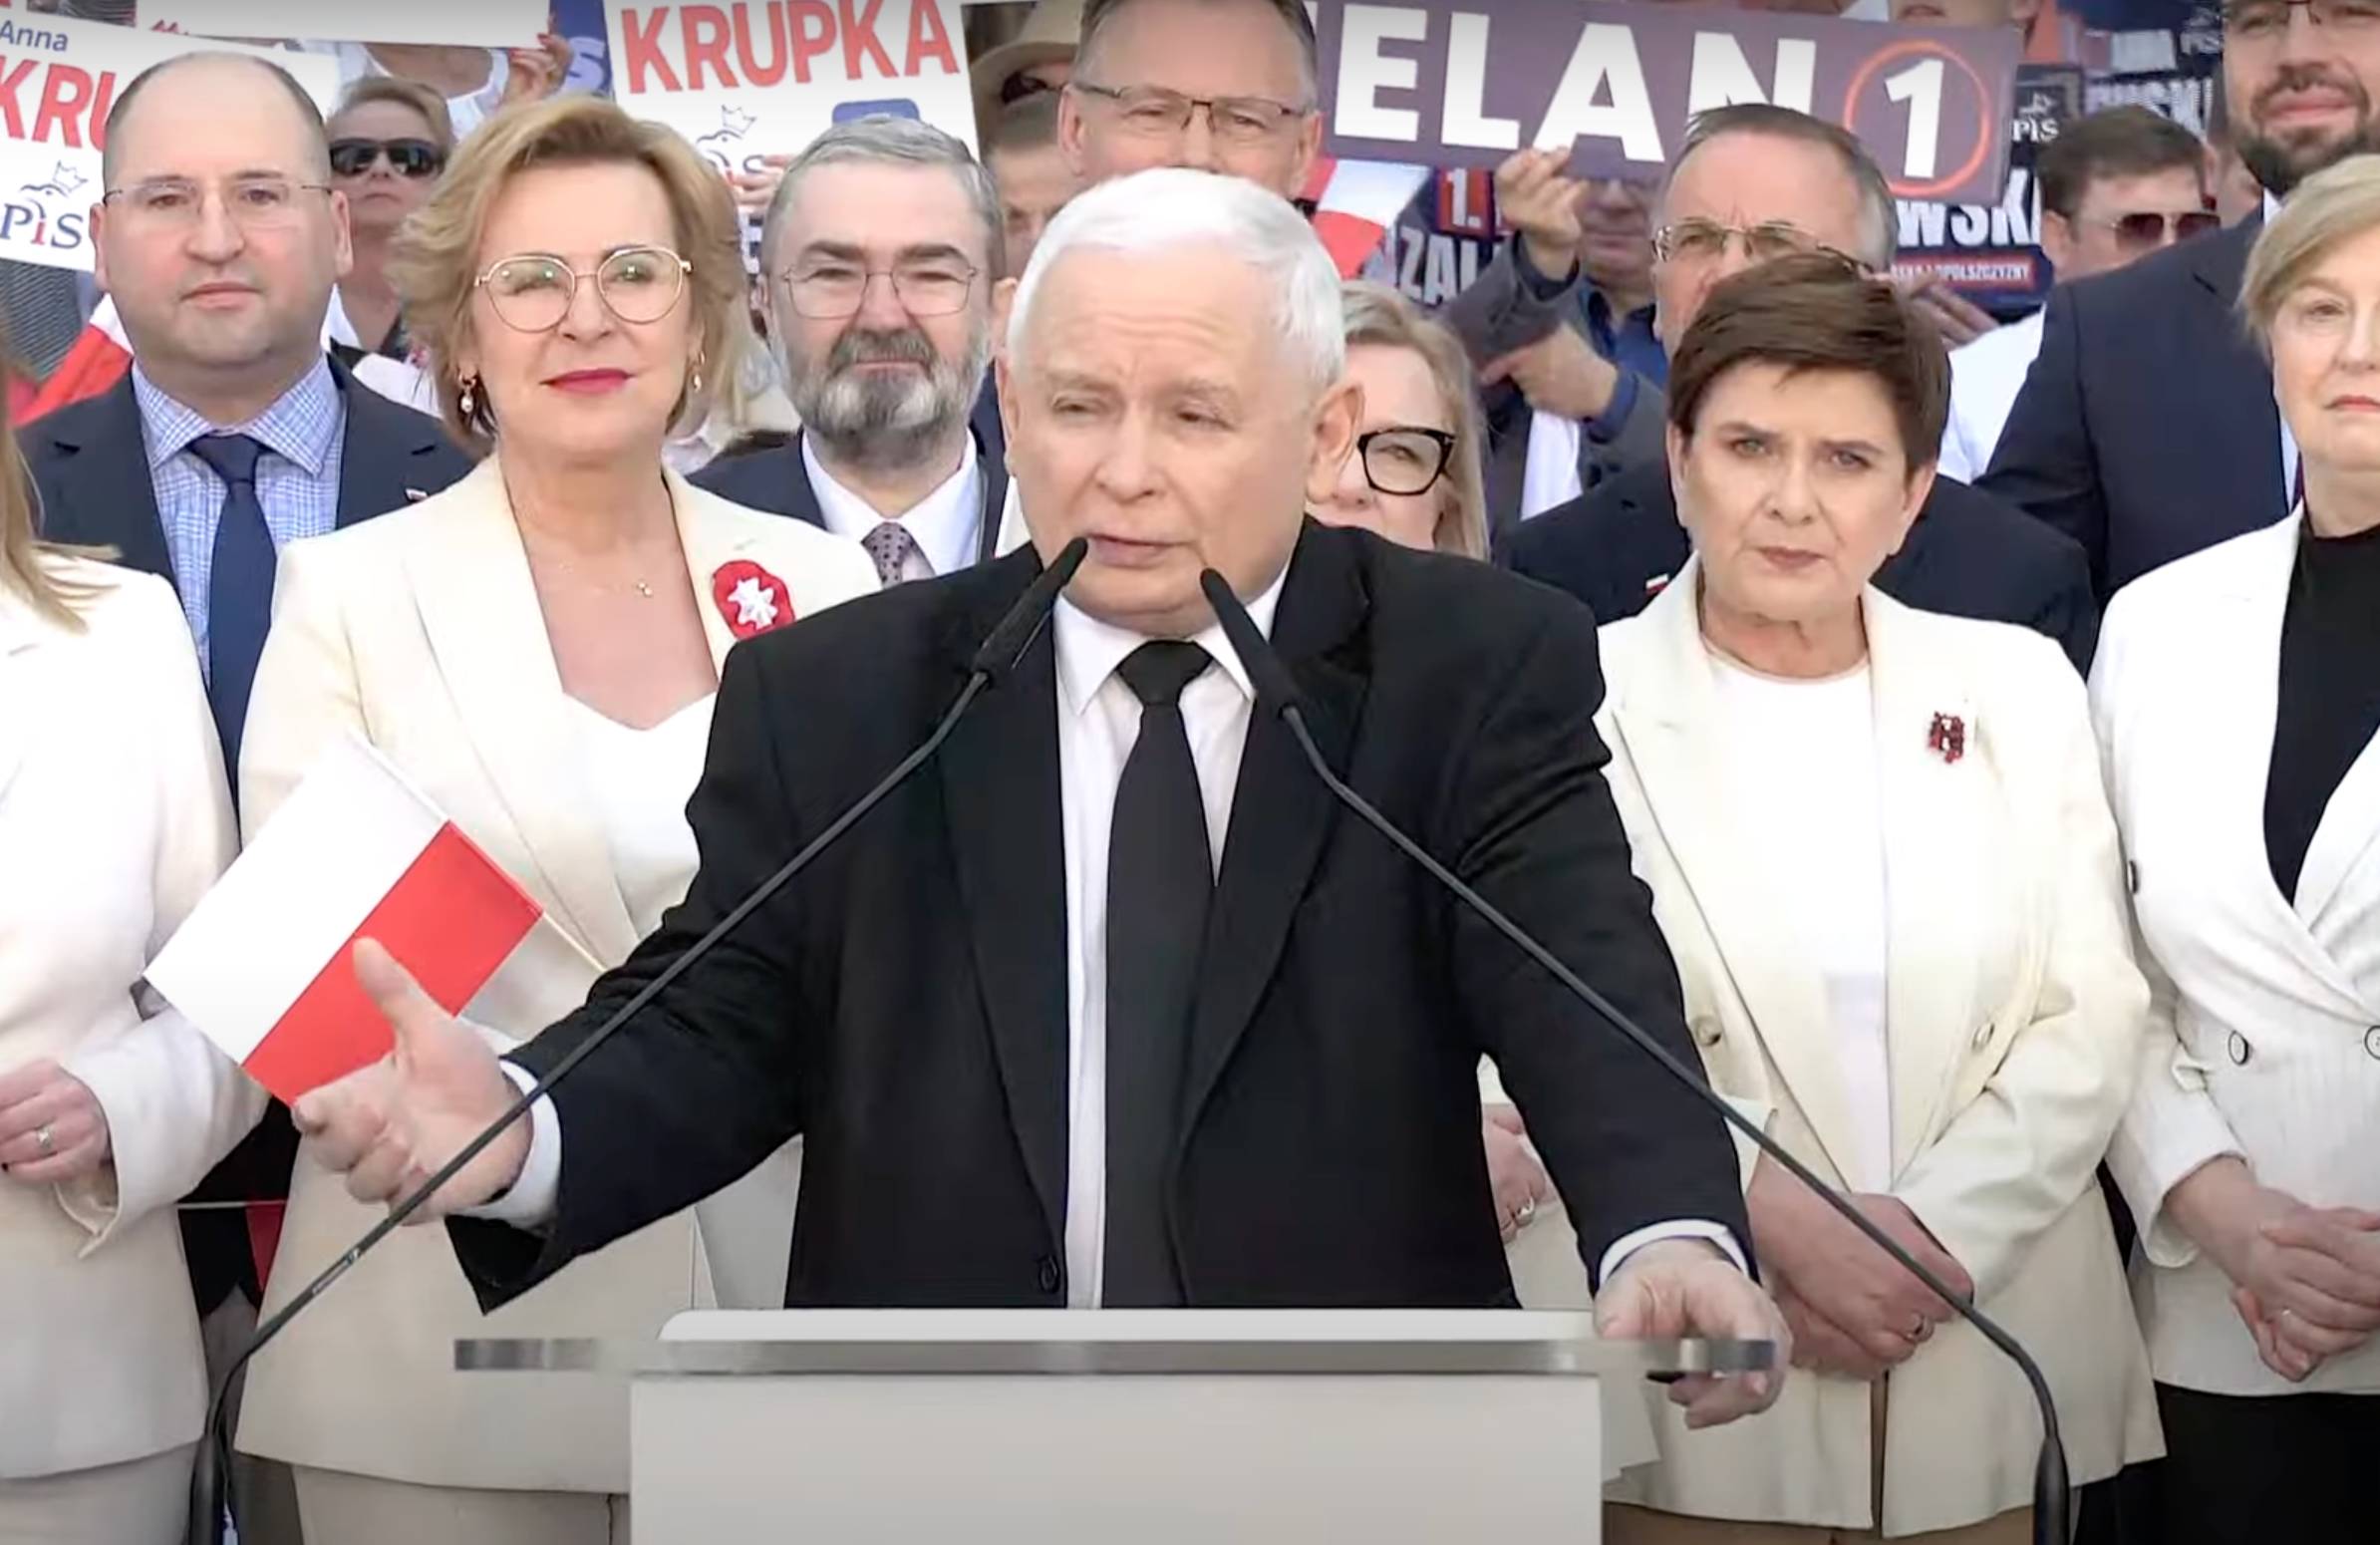 Jarosław Kaczyński przemawia na konwencji PiS w Kielcach, za nim kandydatki na europosłanki w jasnych żakietach